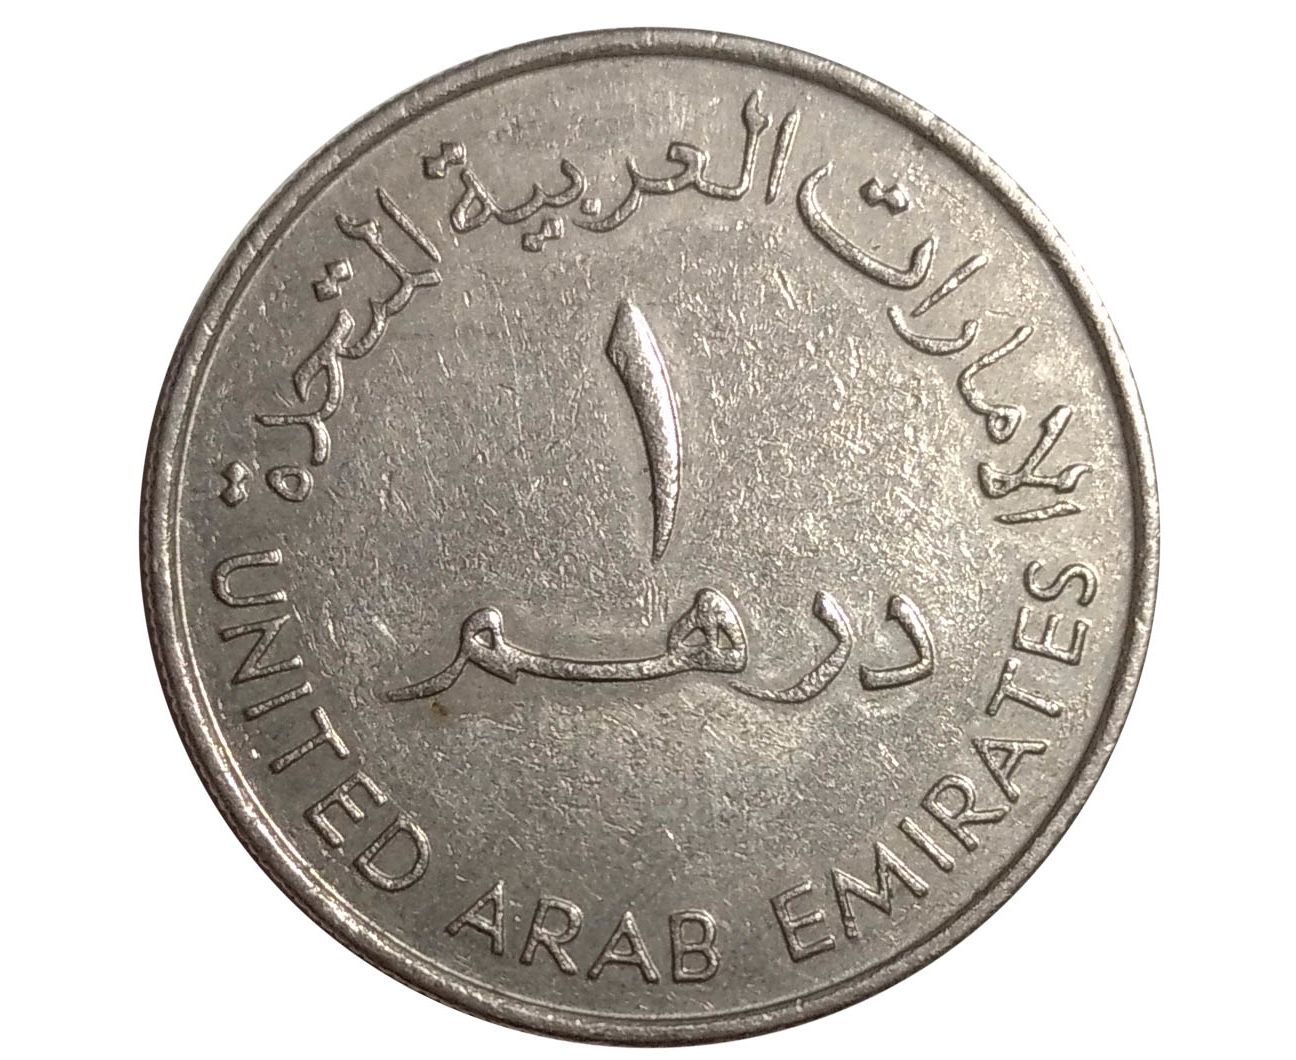 550 дирхам. 1 Дирхам монета. Монеты эмираты 1 дирхам 1995. Дирхам монеты номинал ОАЕ. Дубайская монета дирхам.